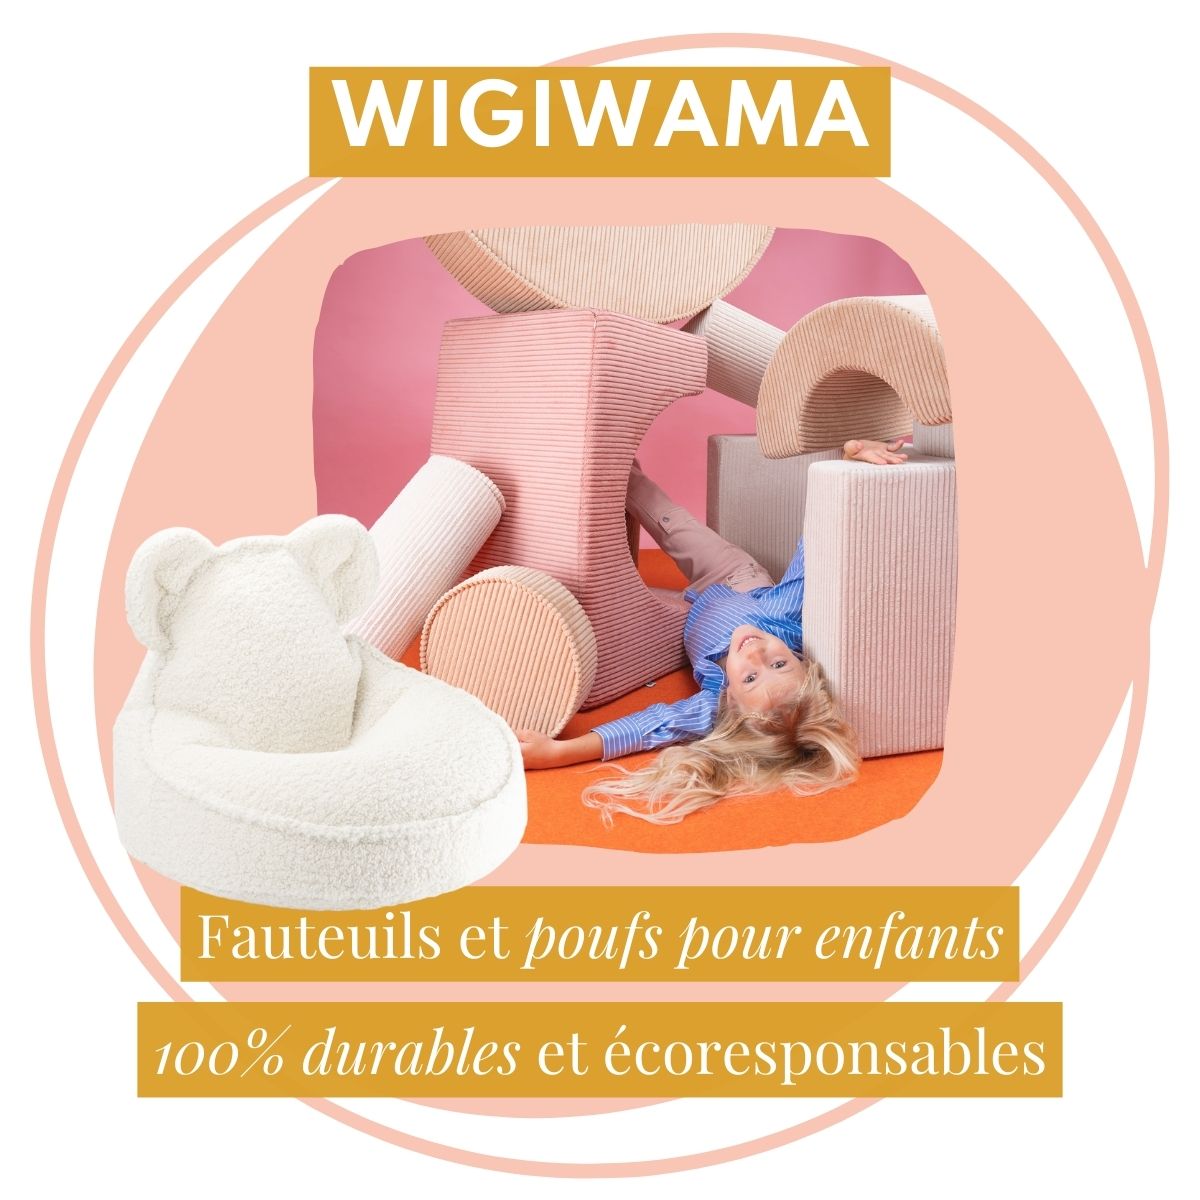 Wigiwama, fauteuils et poufs pour enfants | Confortables, design et écoresponsables